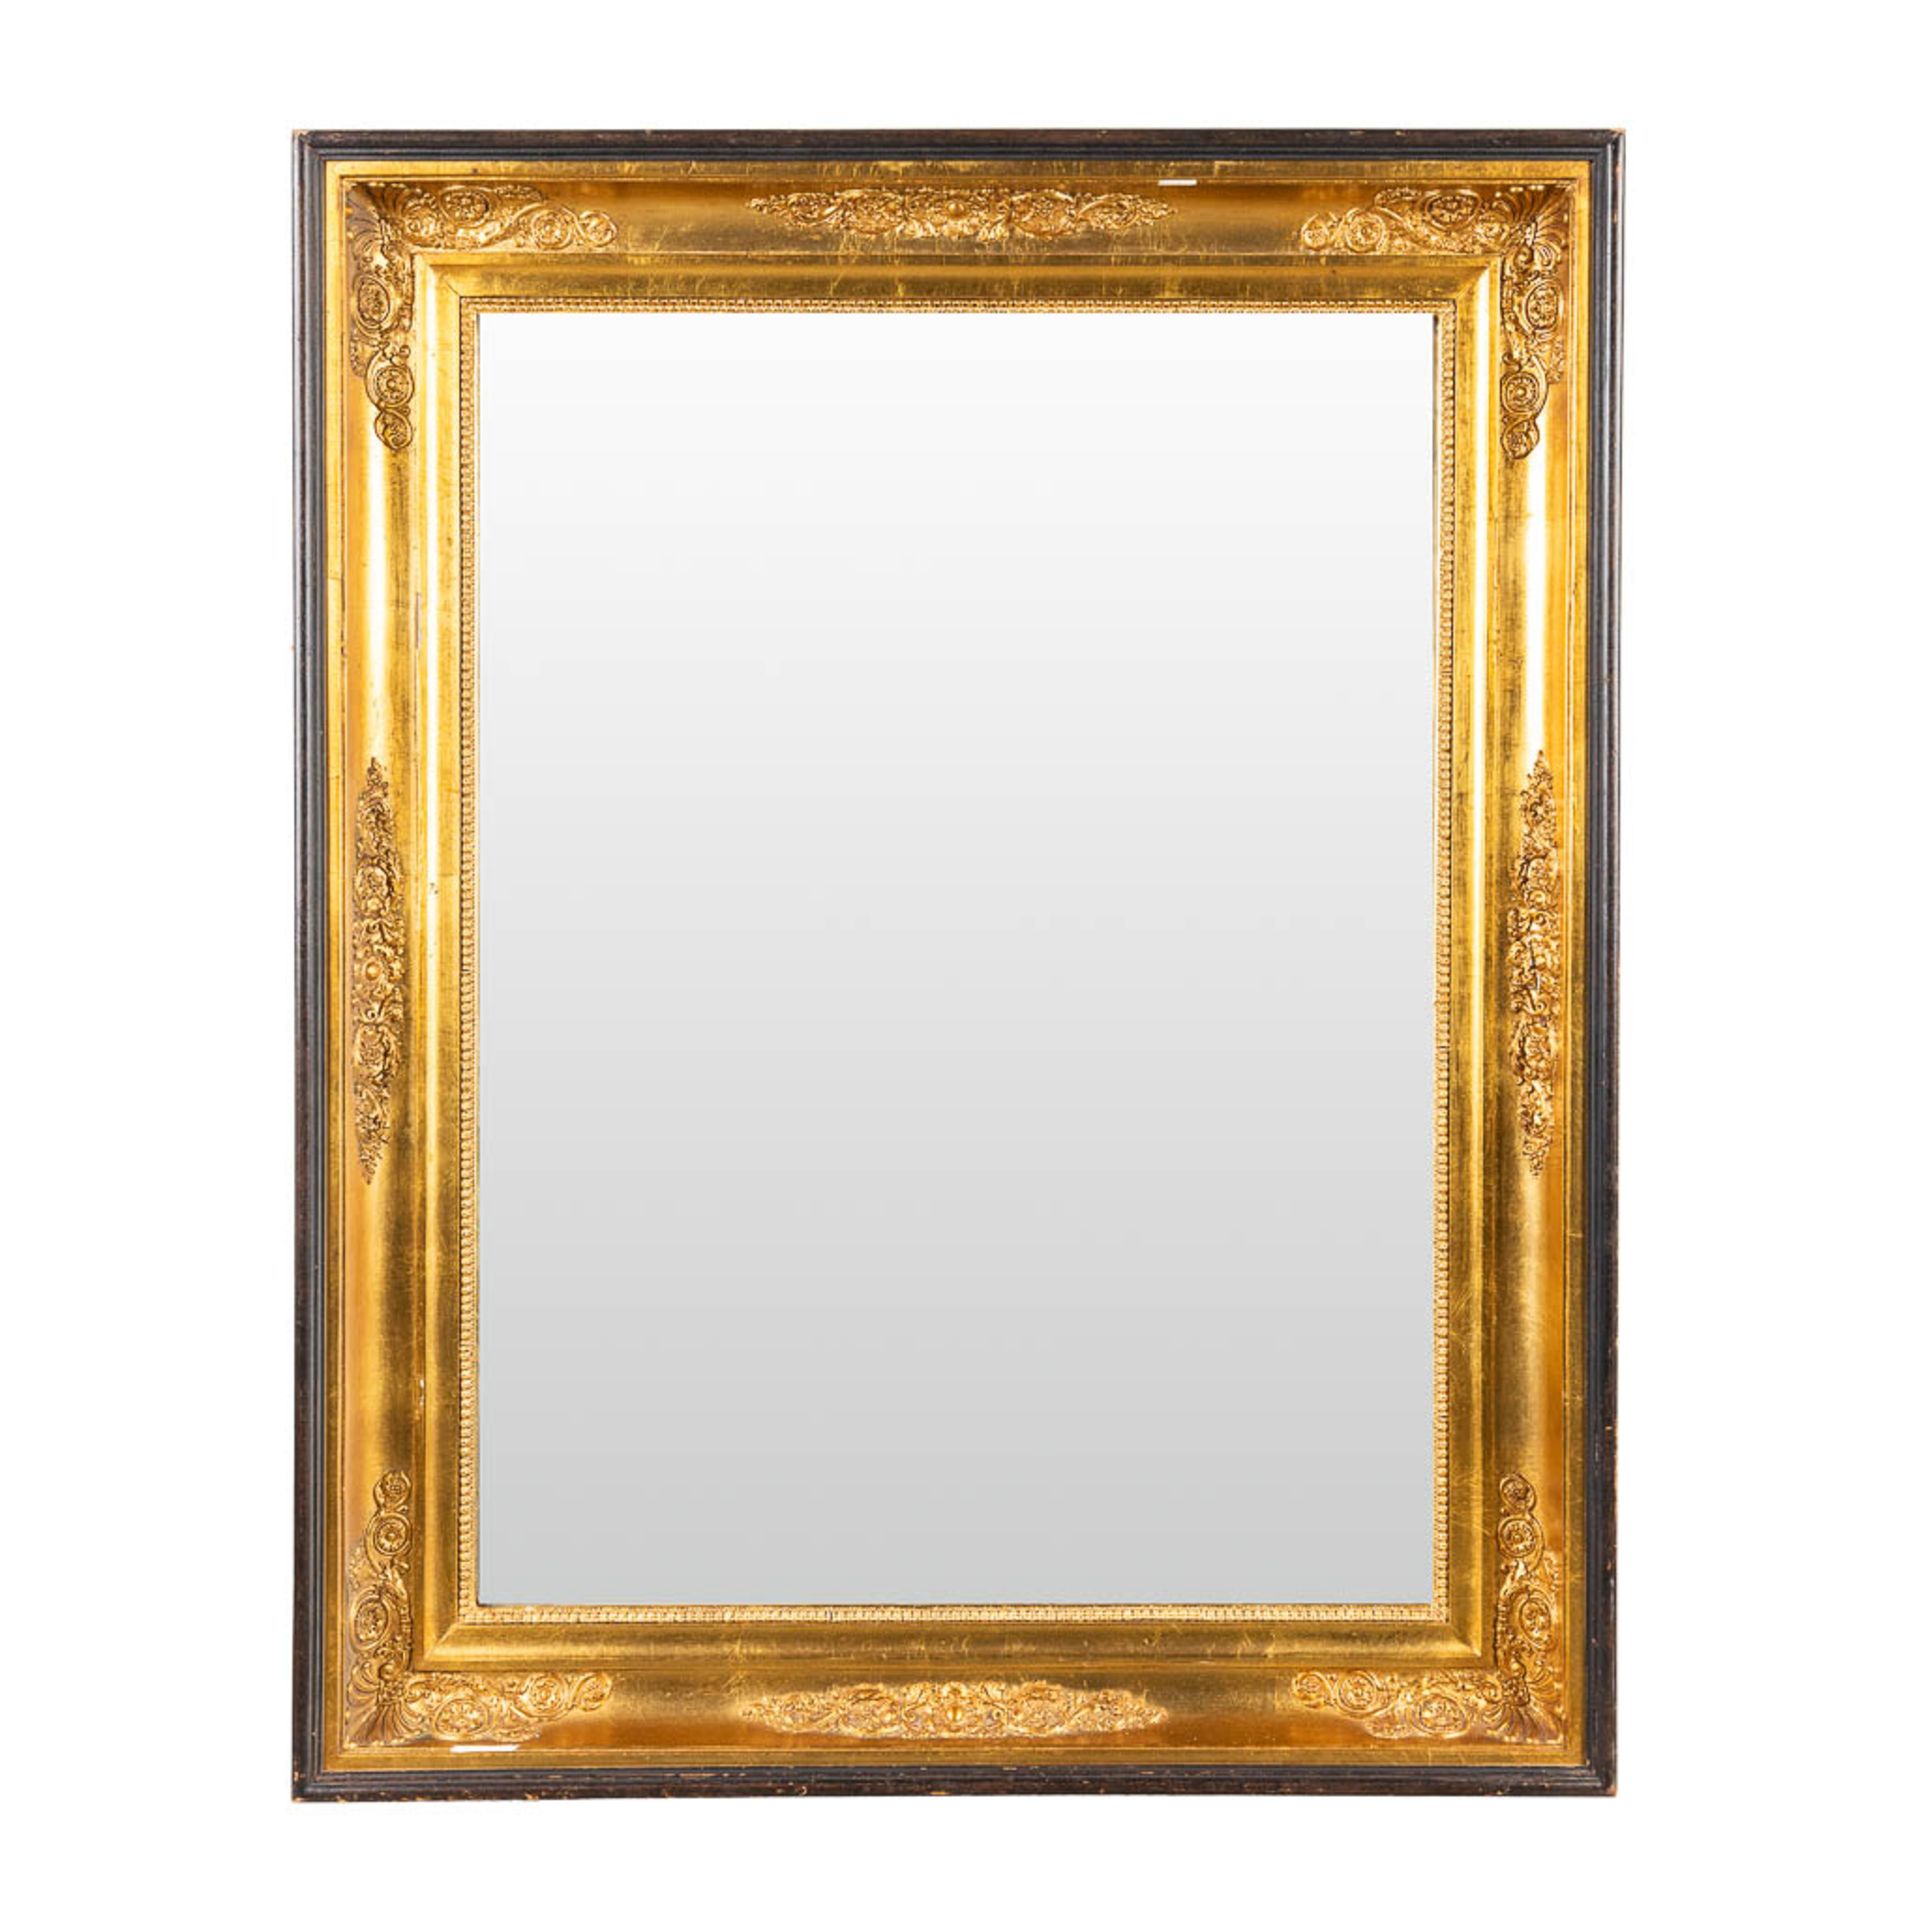 A mirror framed in an empire frame. (W:74 x H:94 cm)